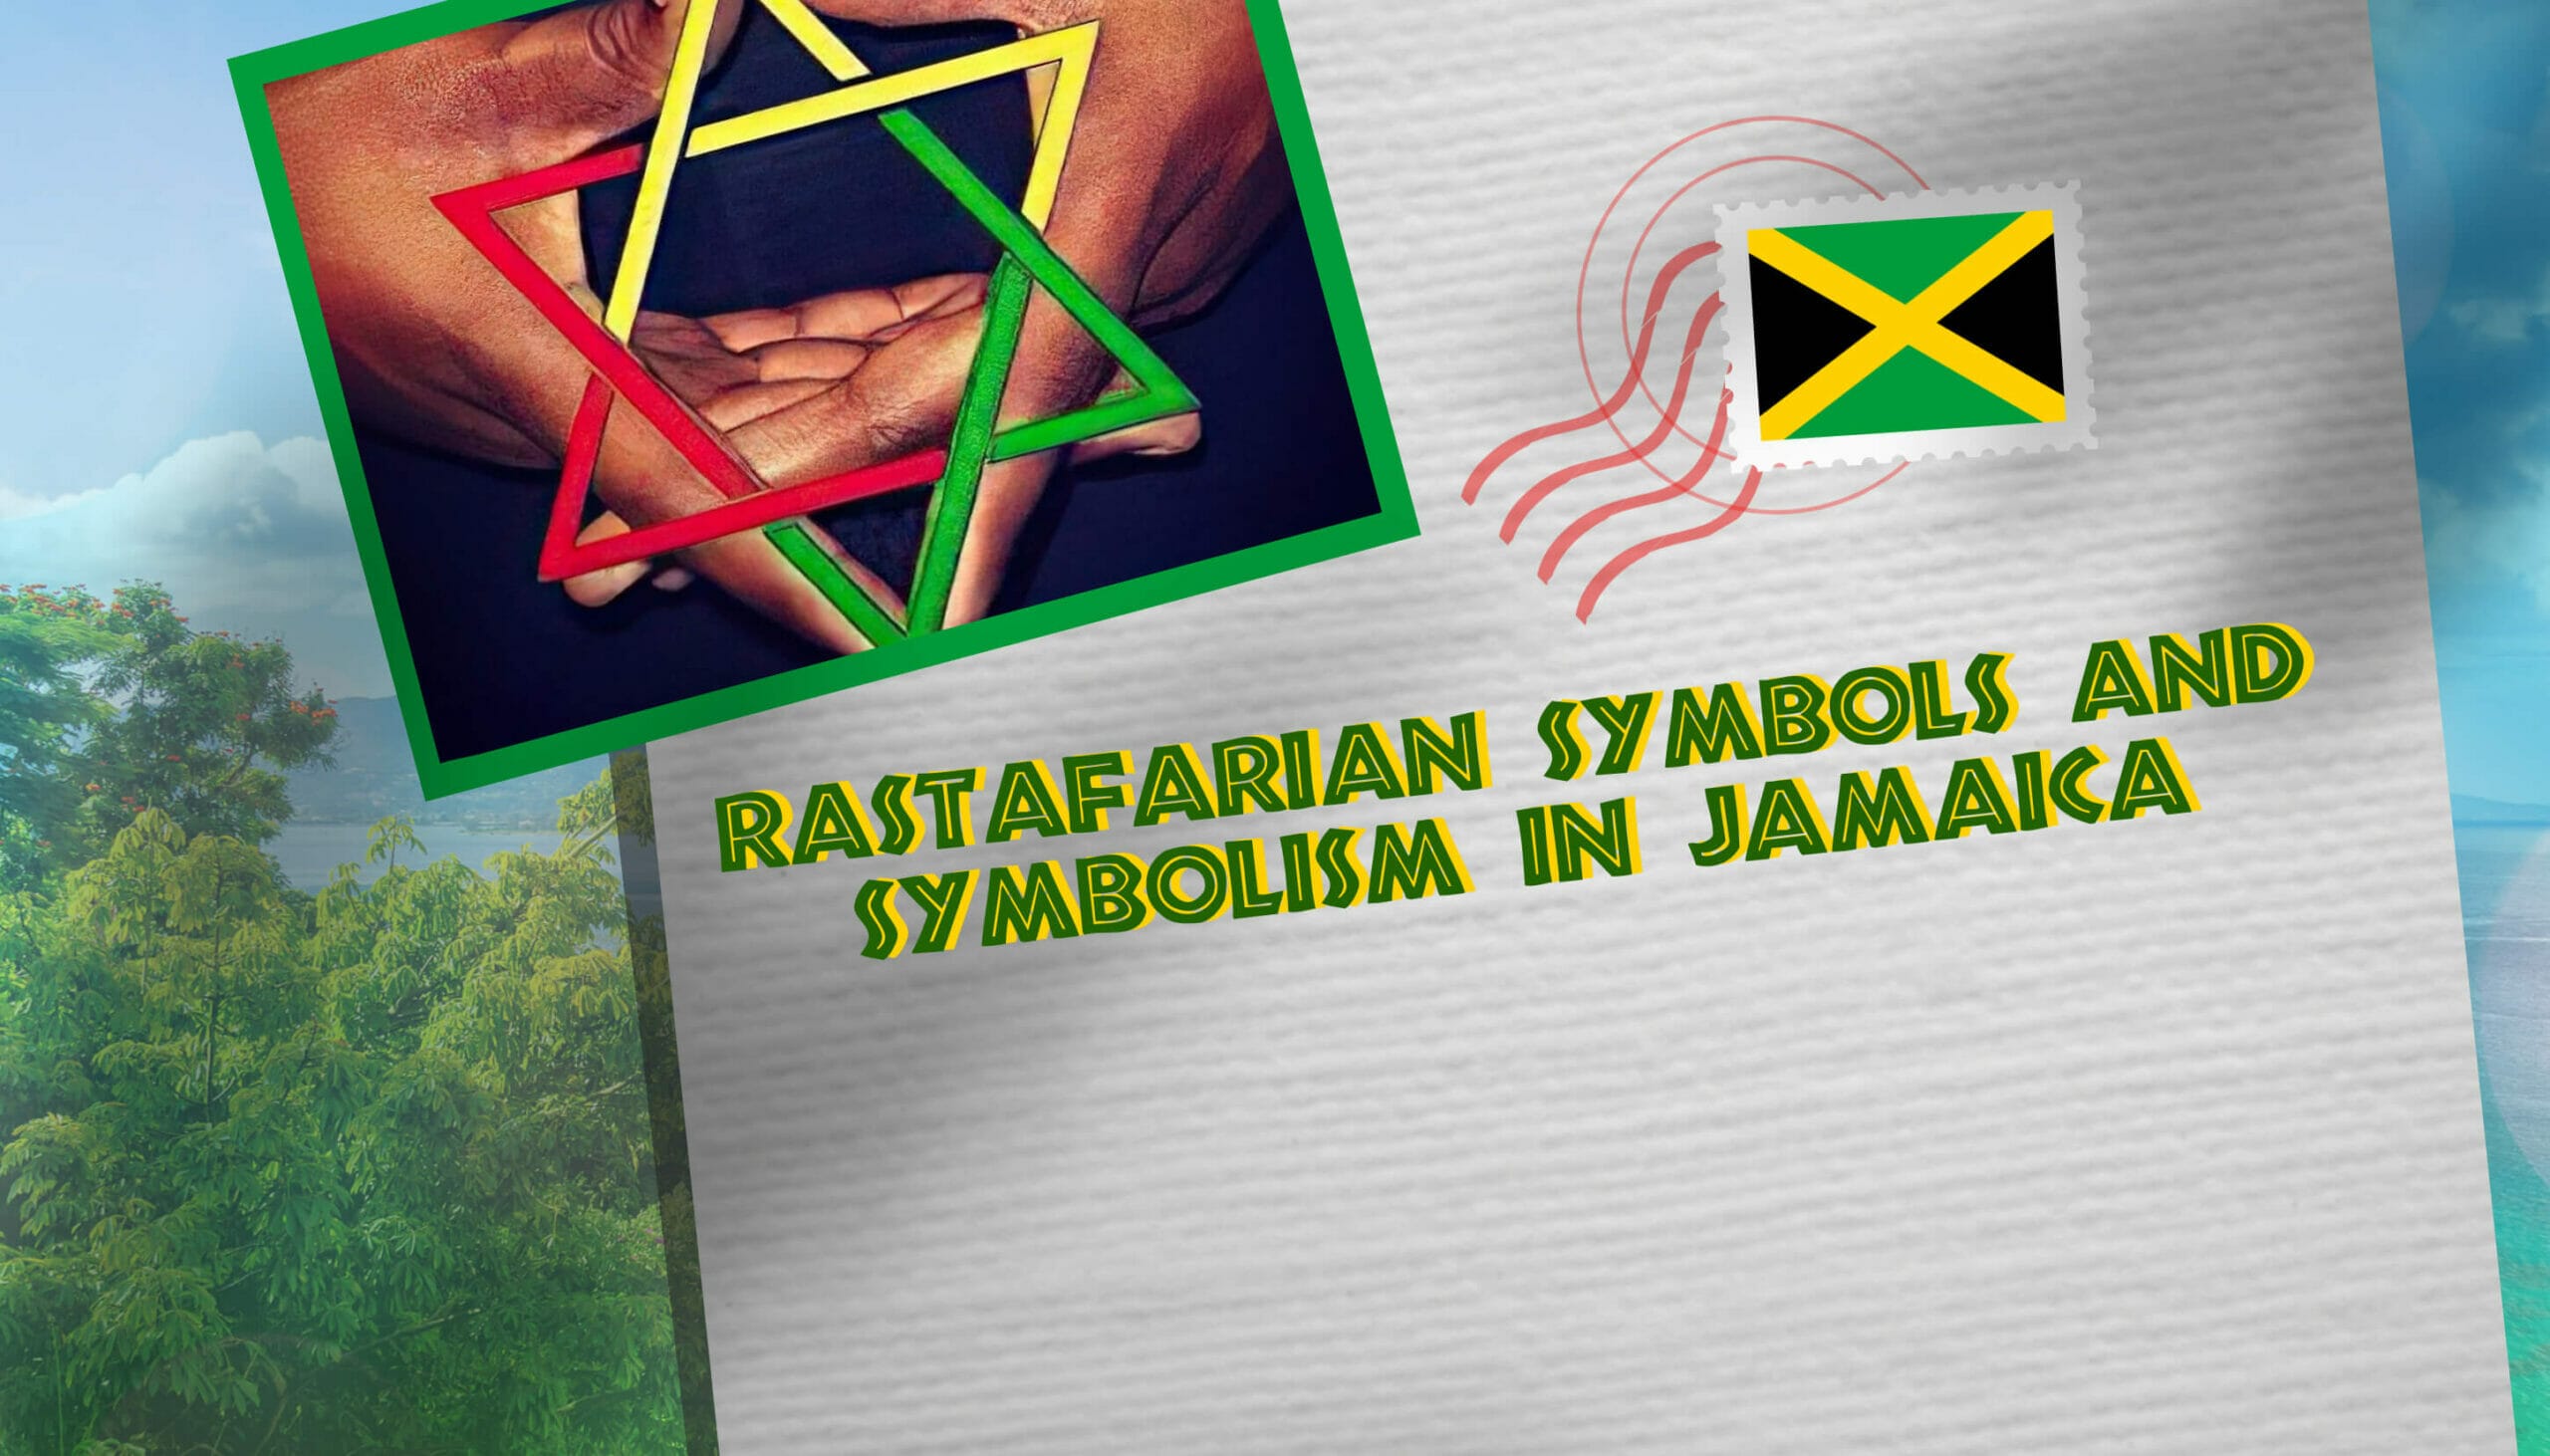 Rastafarian symbols and symbolism in Jamaica